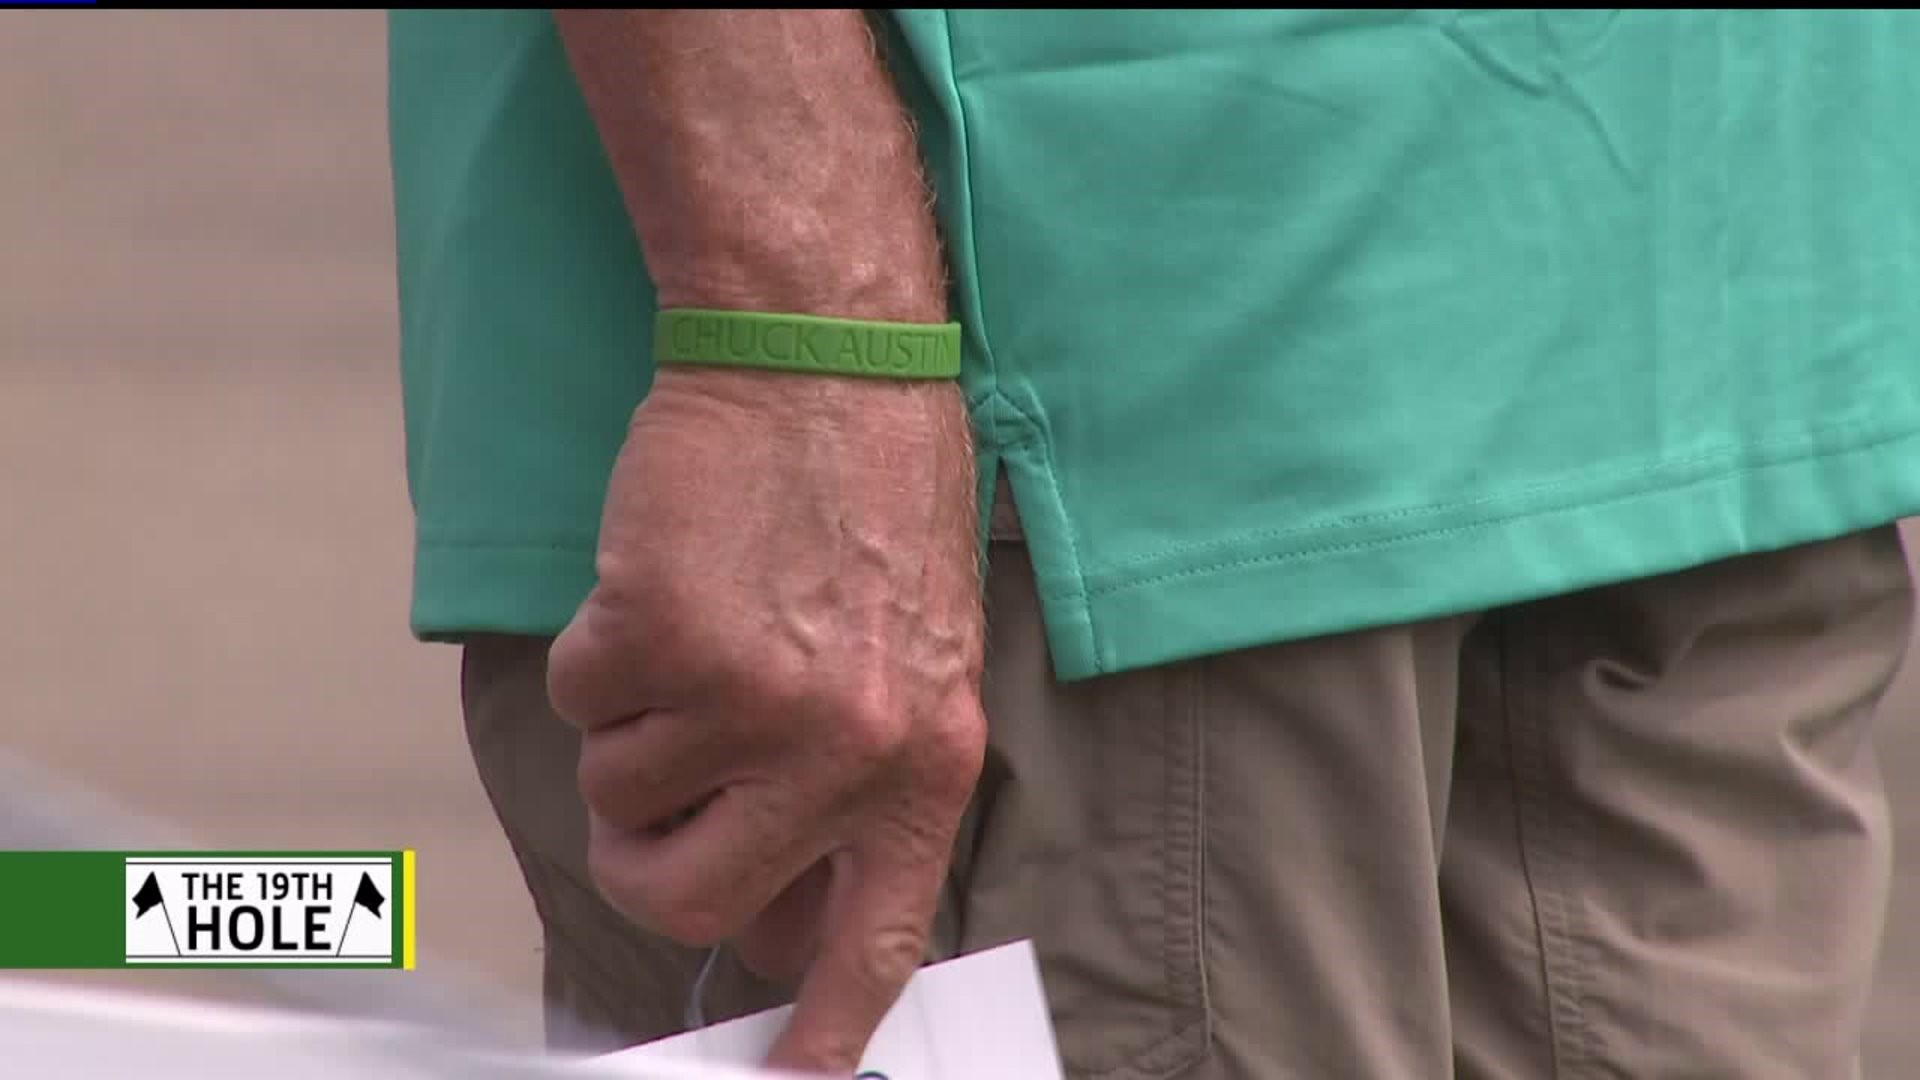 JDC Volunteers wear green bracelets in memory of Chuck Austin